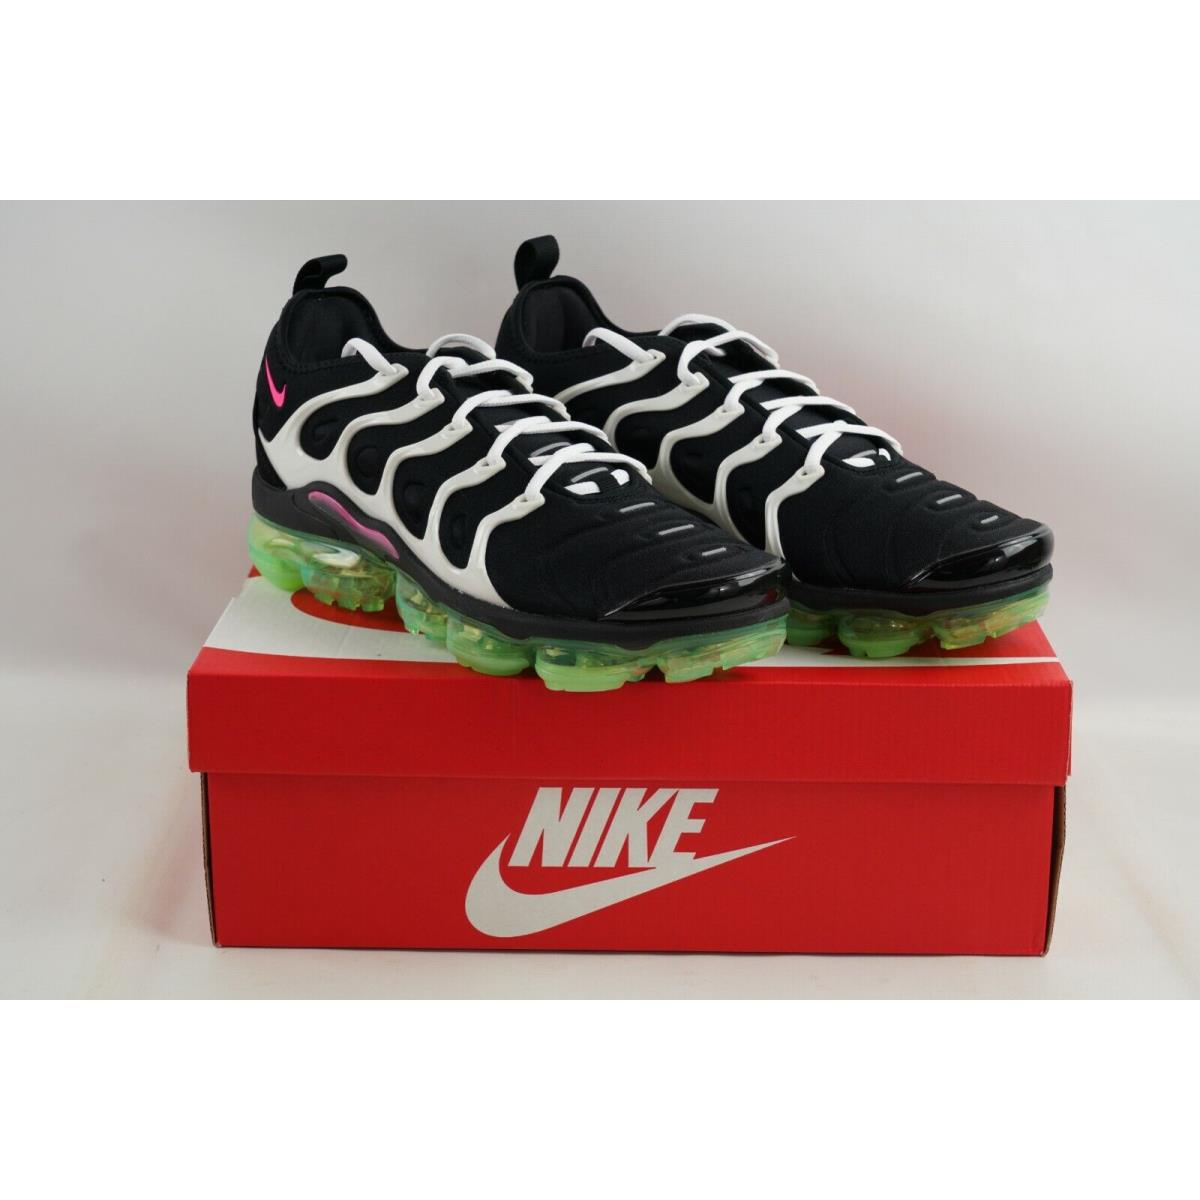 Nike Air Vapormax Plus DM8121-001 Black Hyper Pink Athletic Shoes Men s Sz 9.5